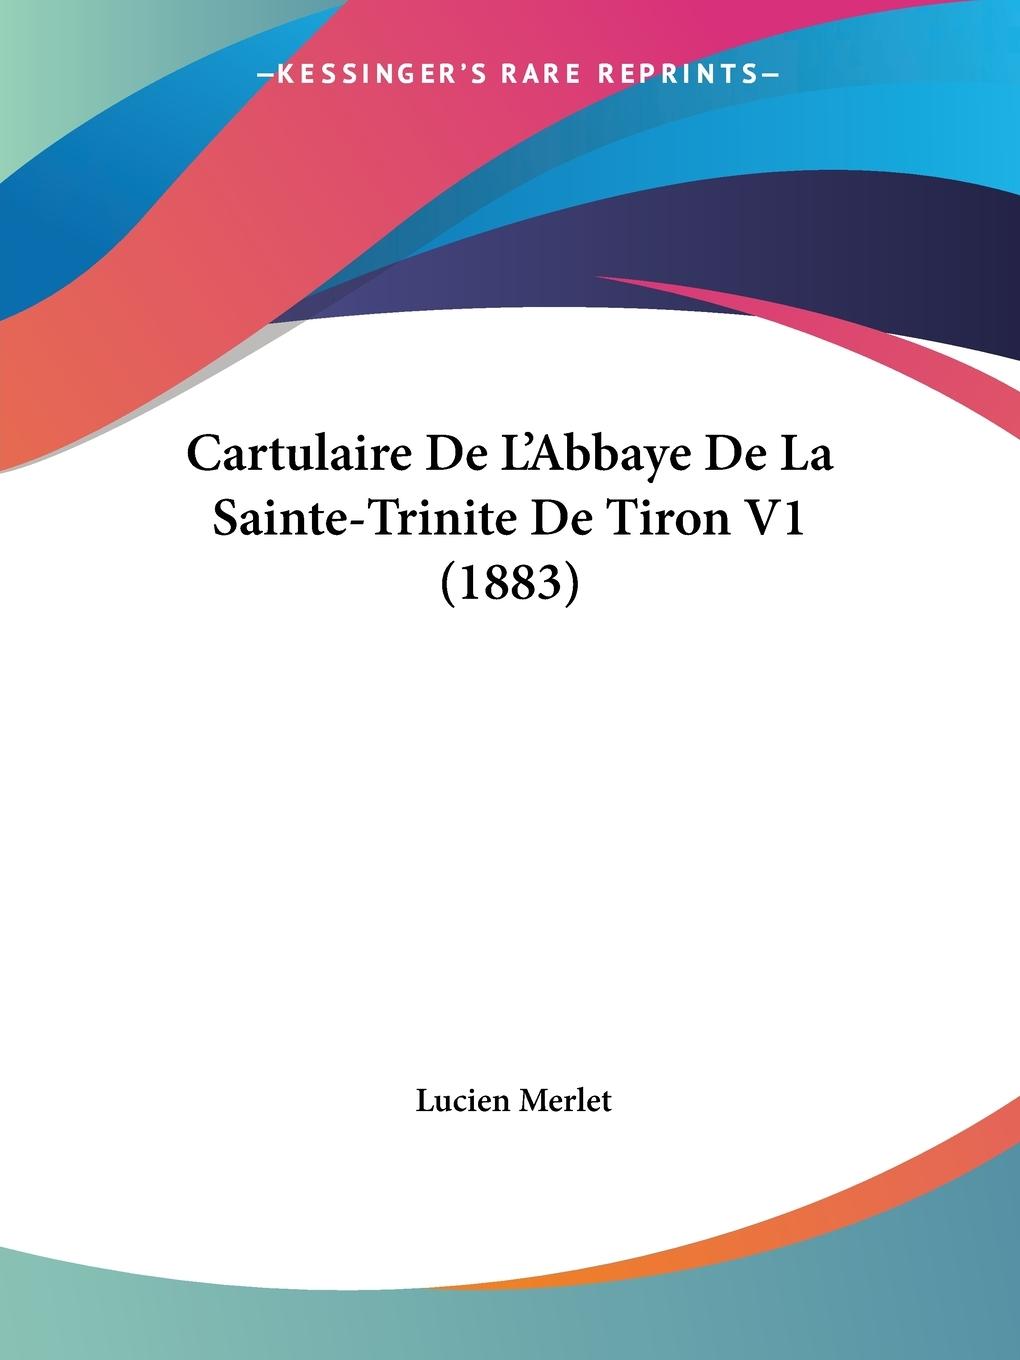 Cartulaire De L Abbaye De La Sainte-Trinite De Tiron V1 (1883) - Merlet, Lucien